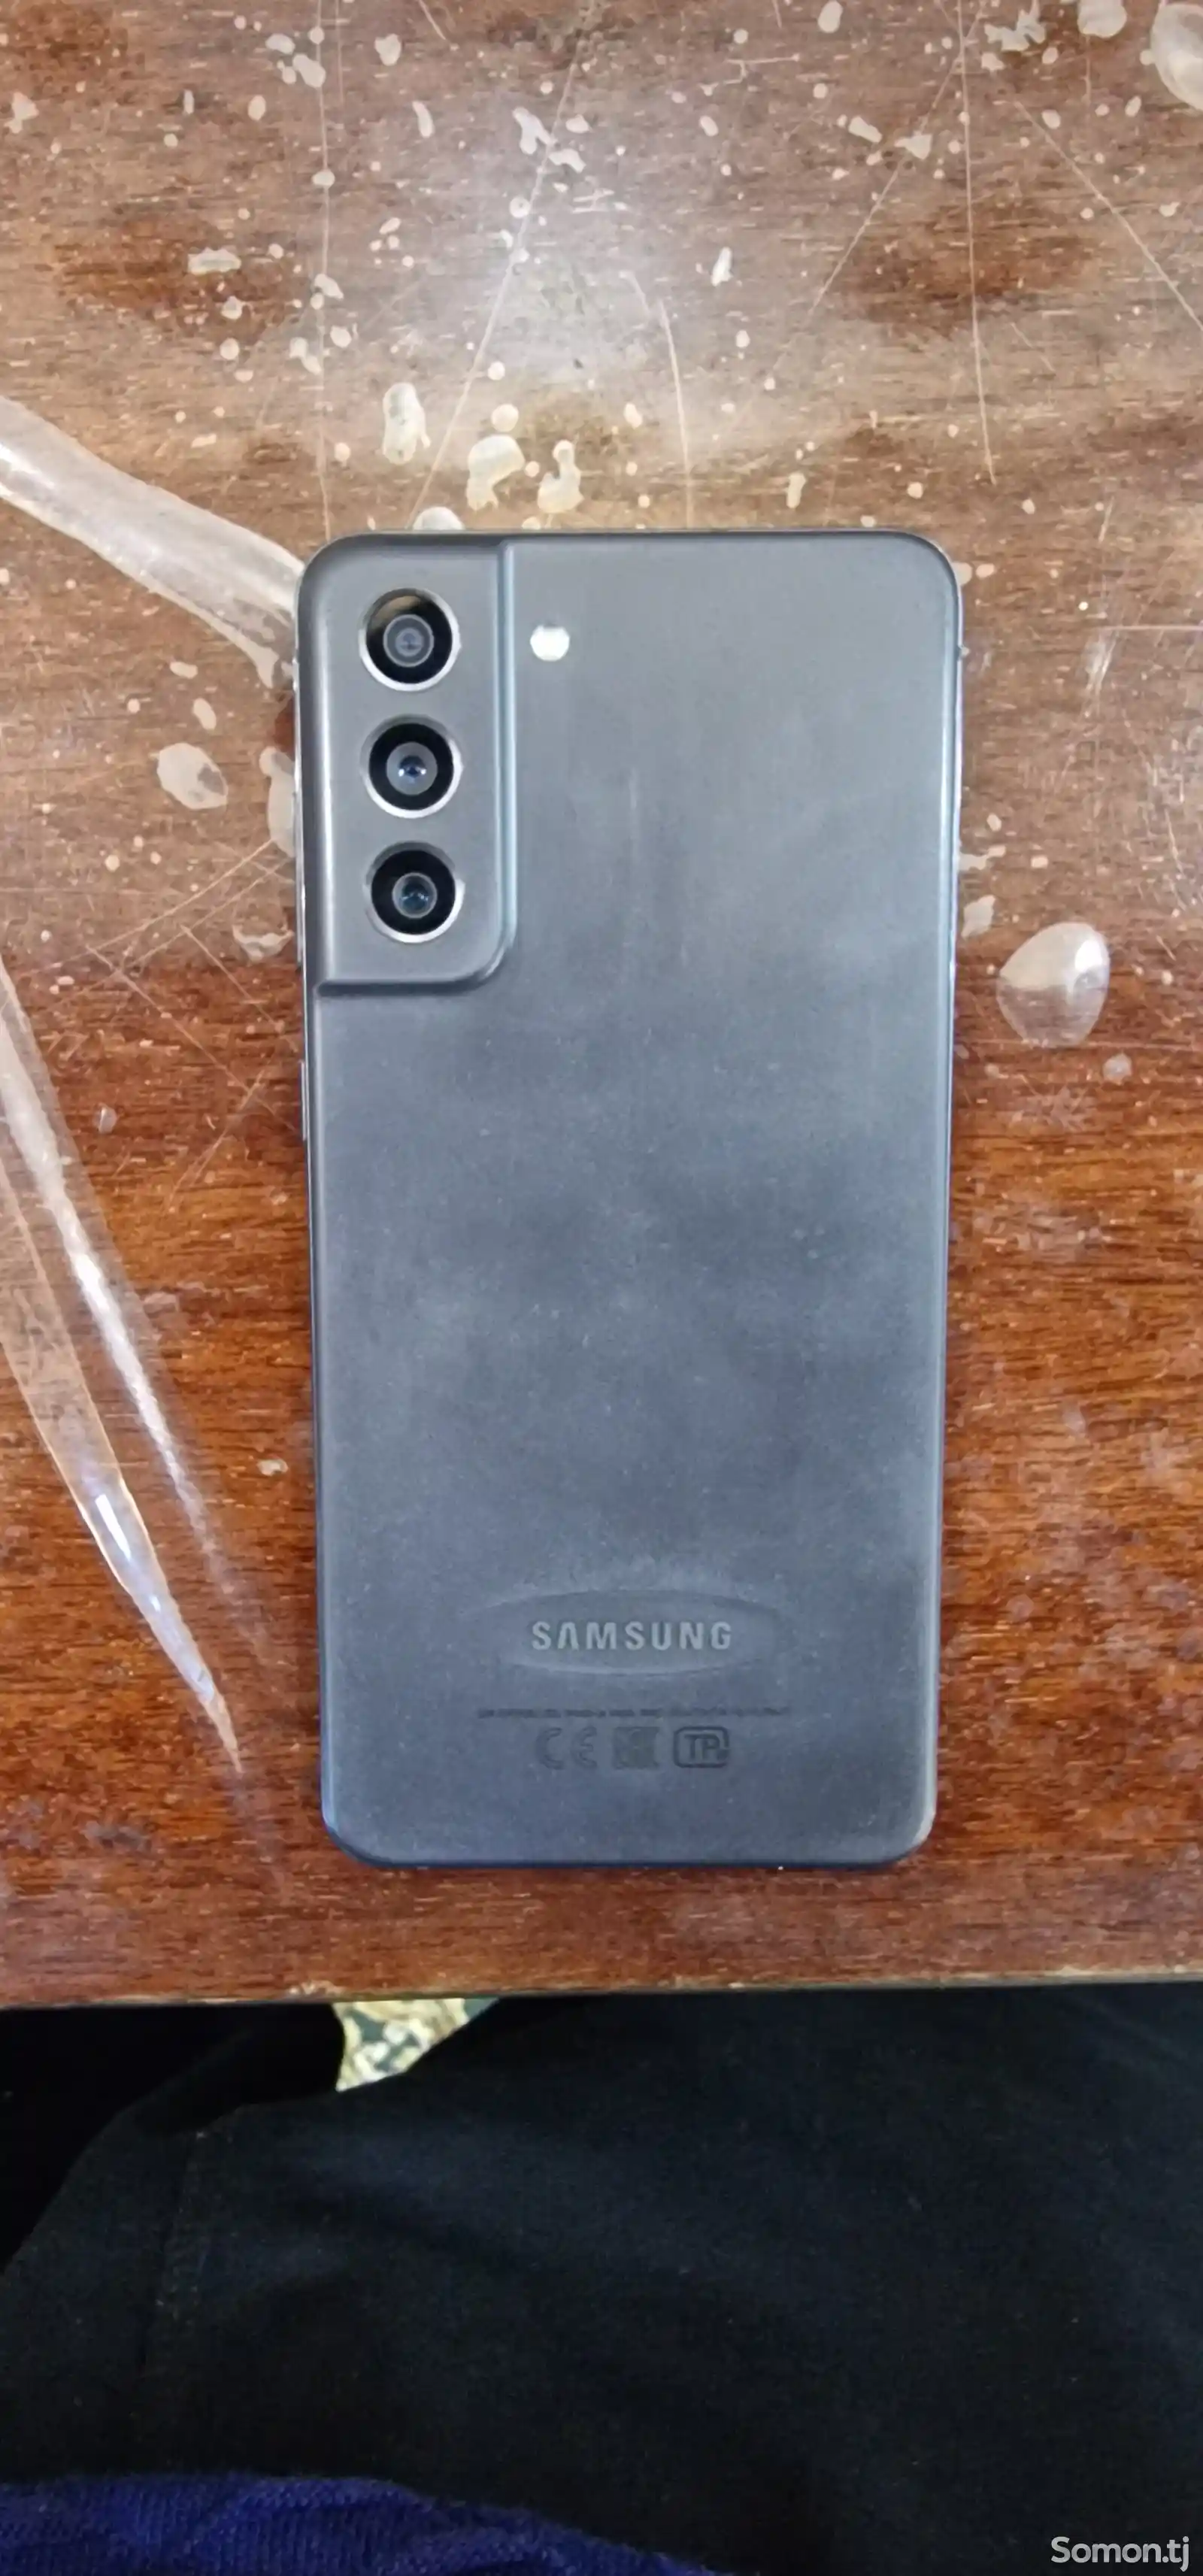 Samsung Galaxy S21 FE 5G-4